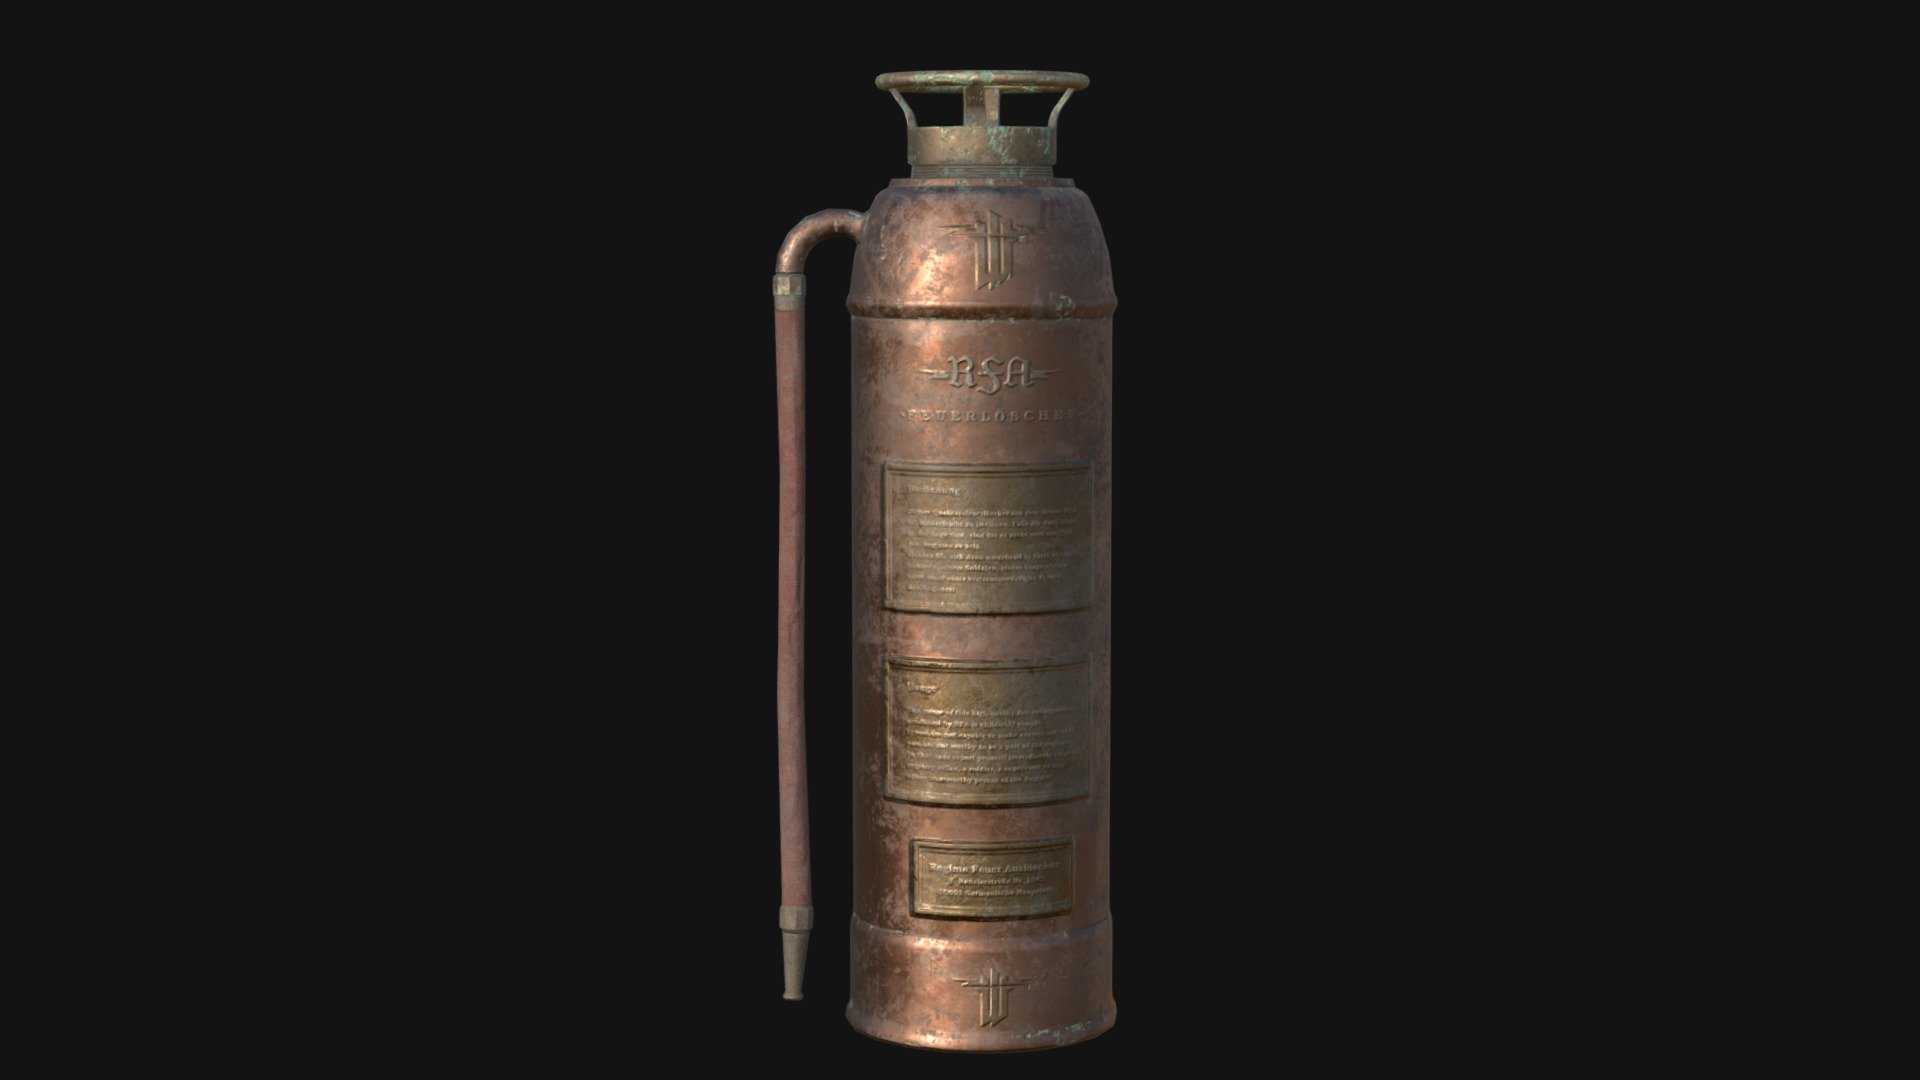 Fire extinguisher inspired by Wolfenstein